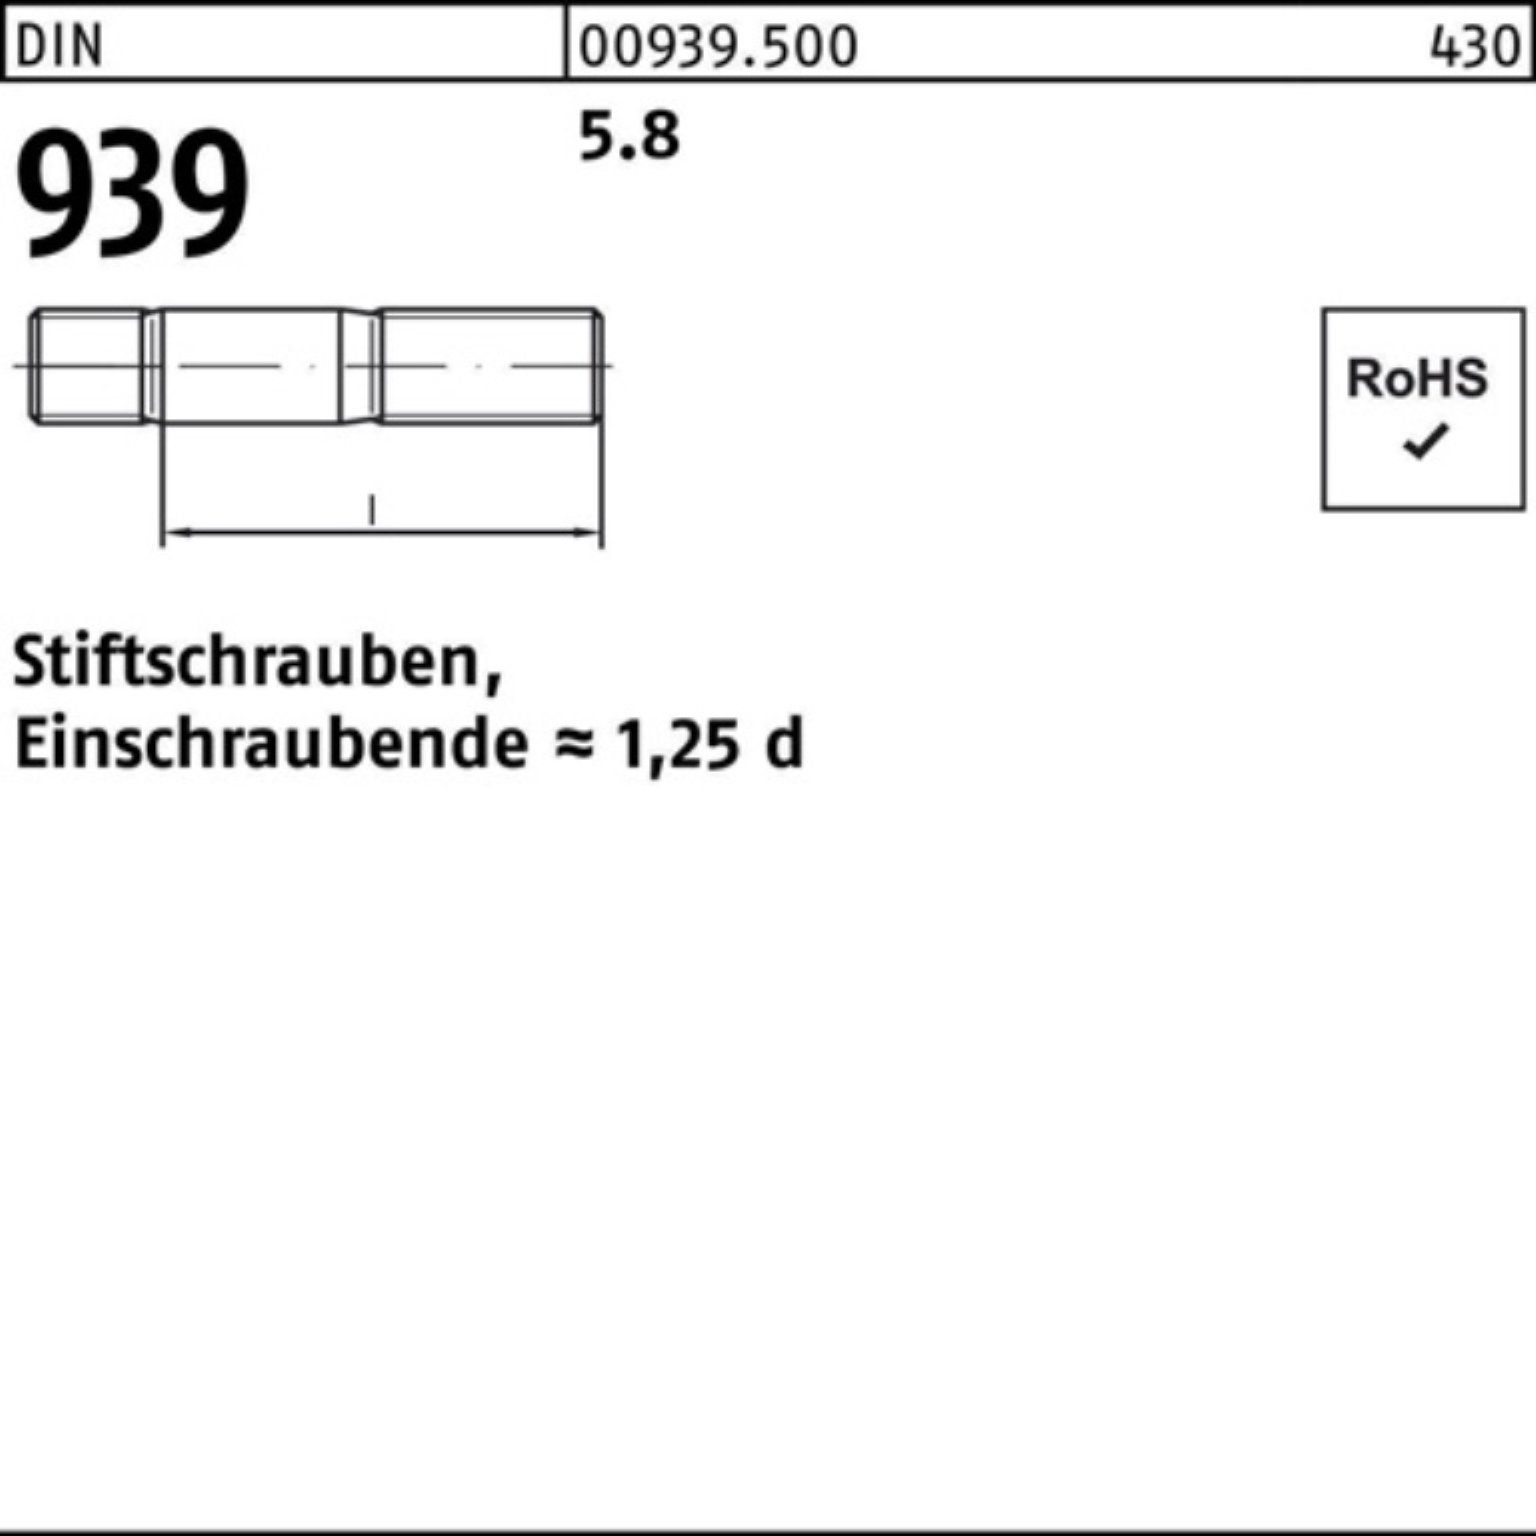 5.8 100er Stiftschraube 939 DIN Pack Stiftschraube 80 S 50 Reyher M12x Einschraubende=1,25d